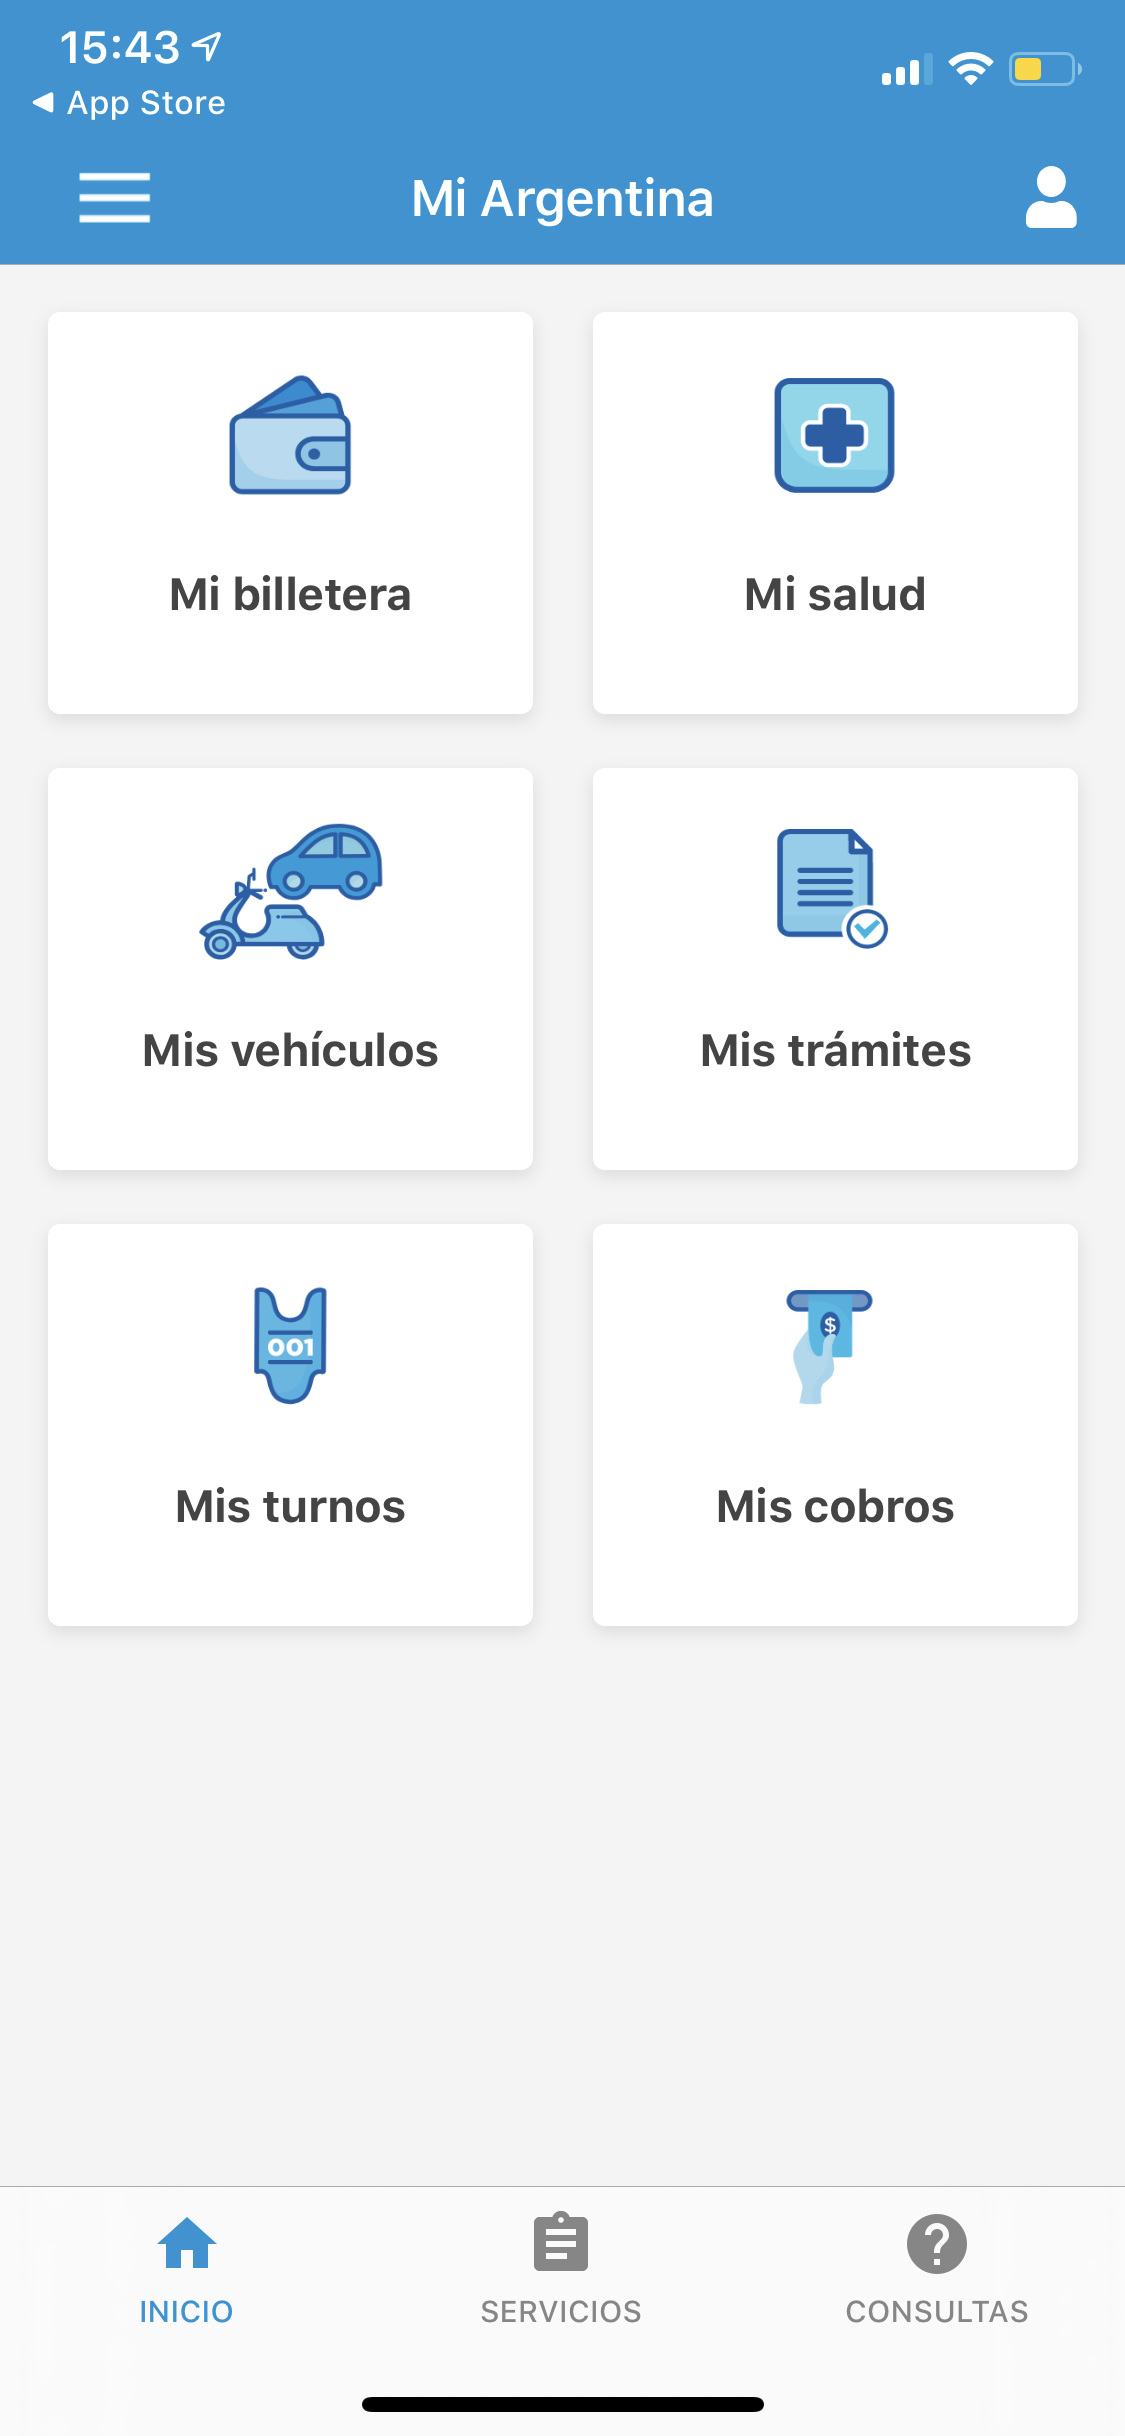 Mi Argentina - App